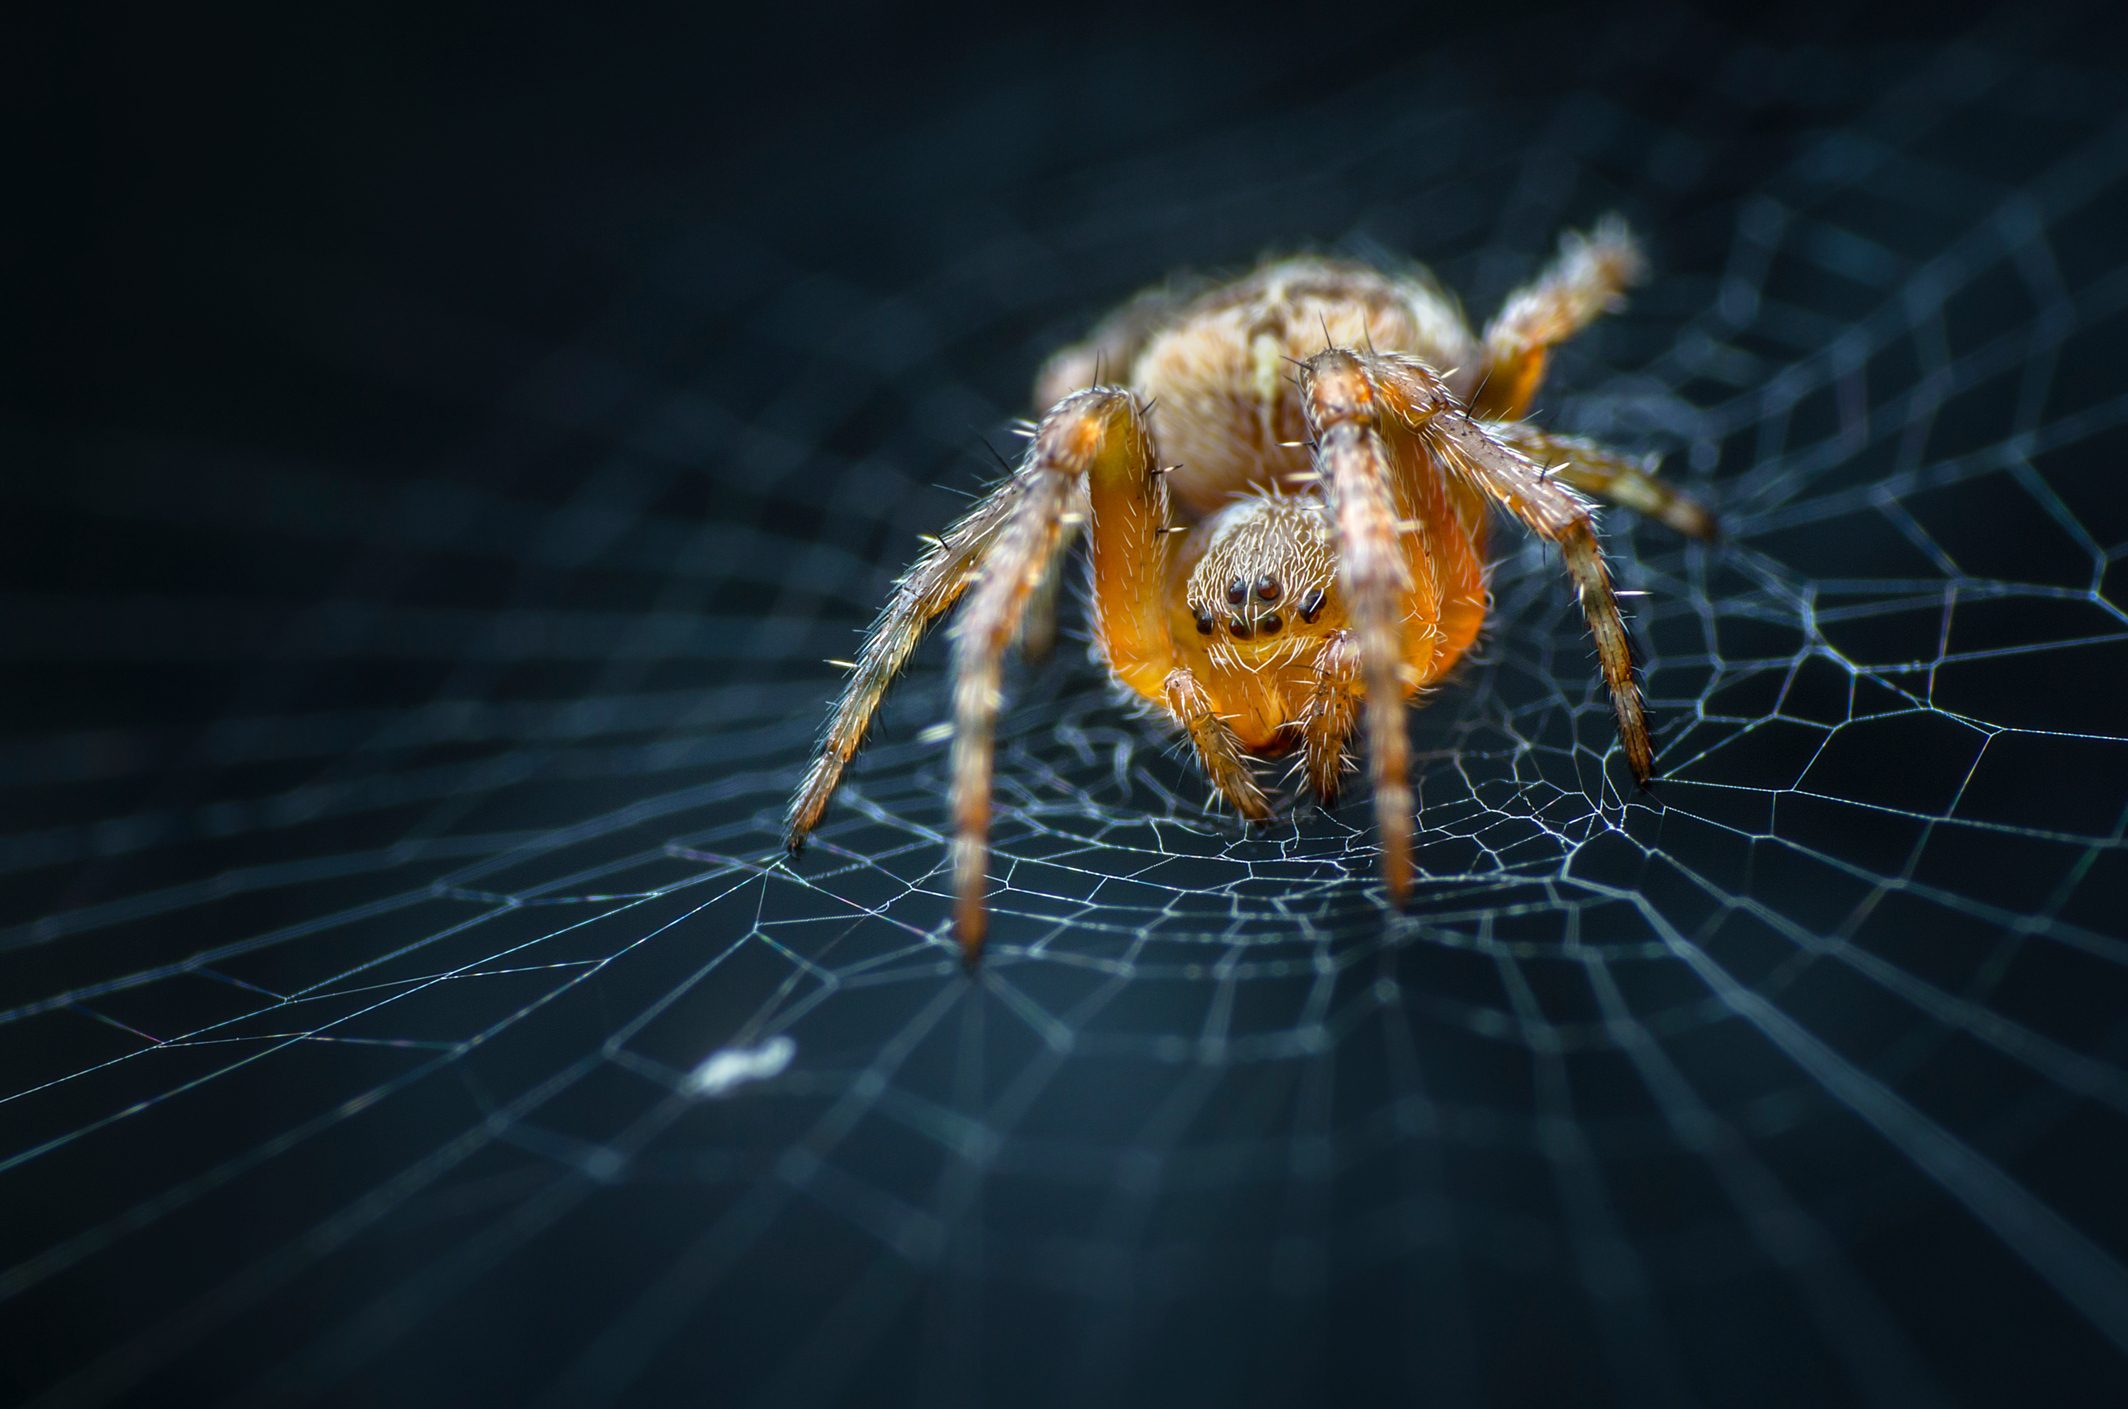 Benefits Of Eating Spider Webs